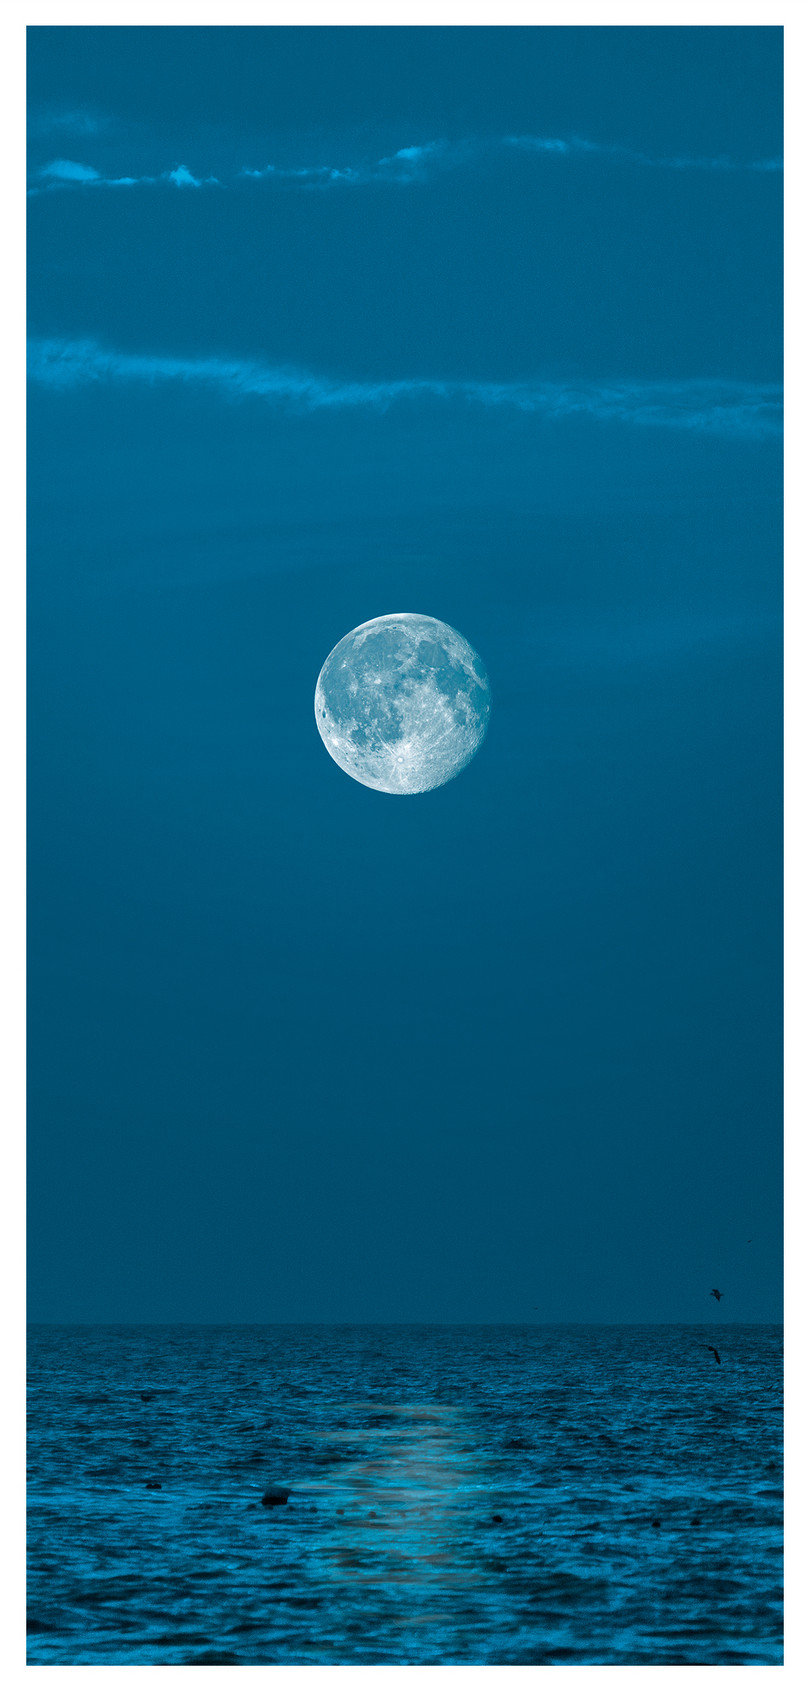 月圓之夜手機壁紙圖片素材 Jpg圖片尺寸1125 2436px 高清圖片